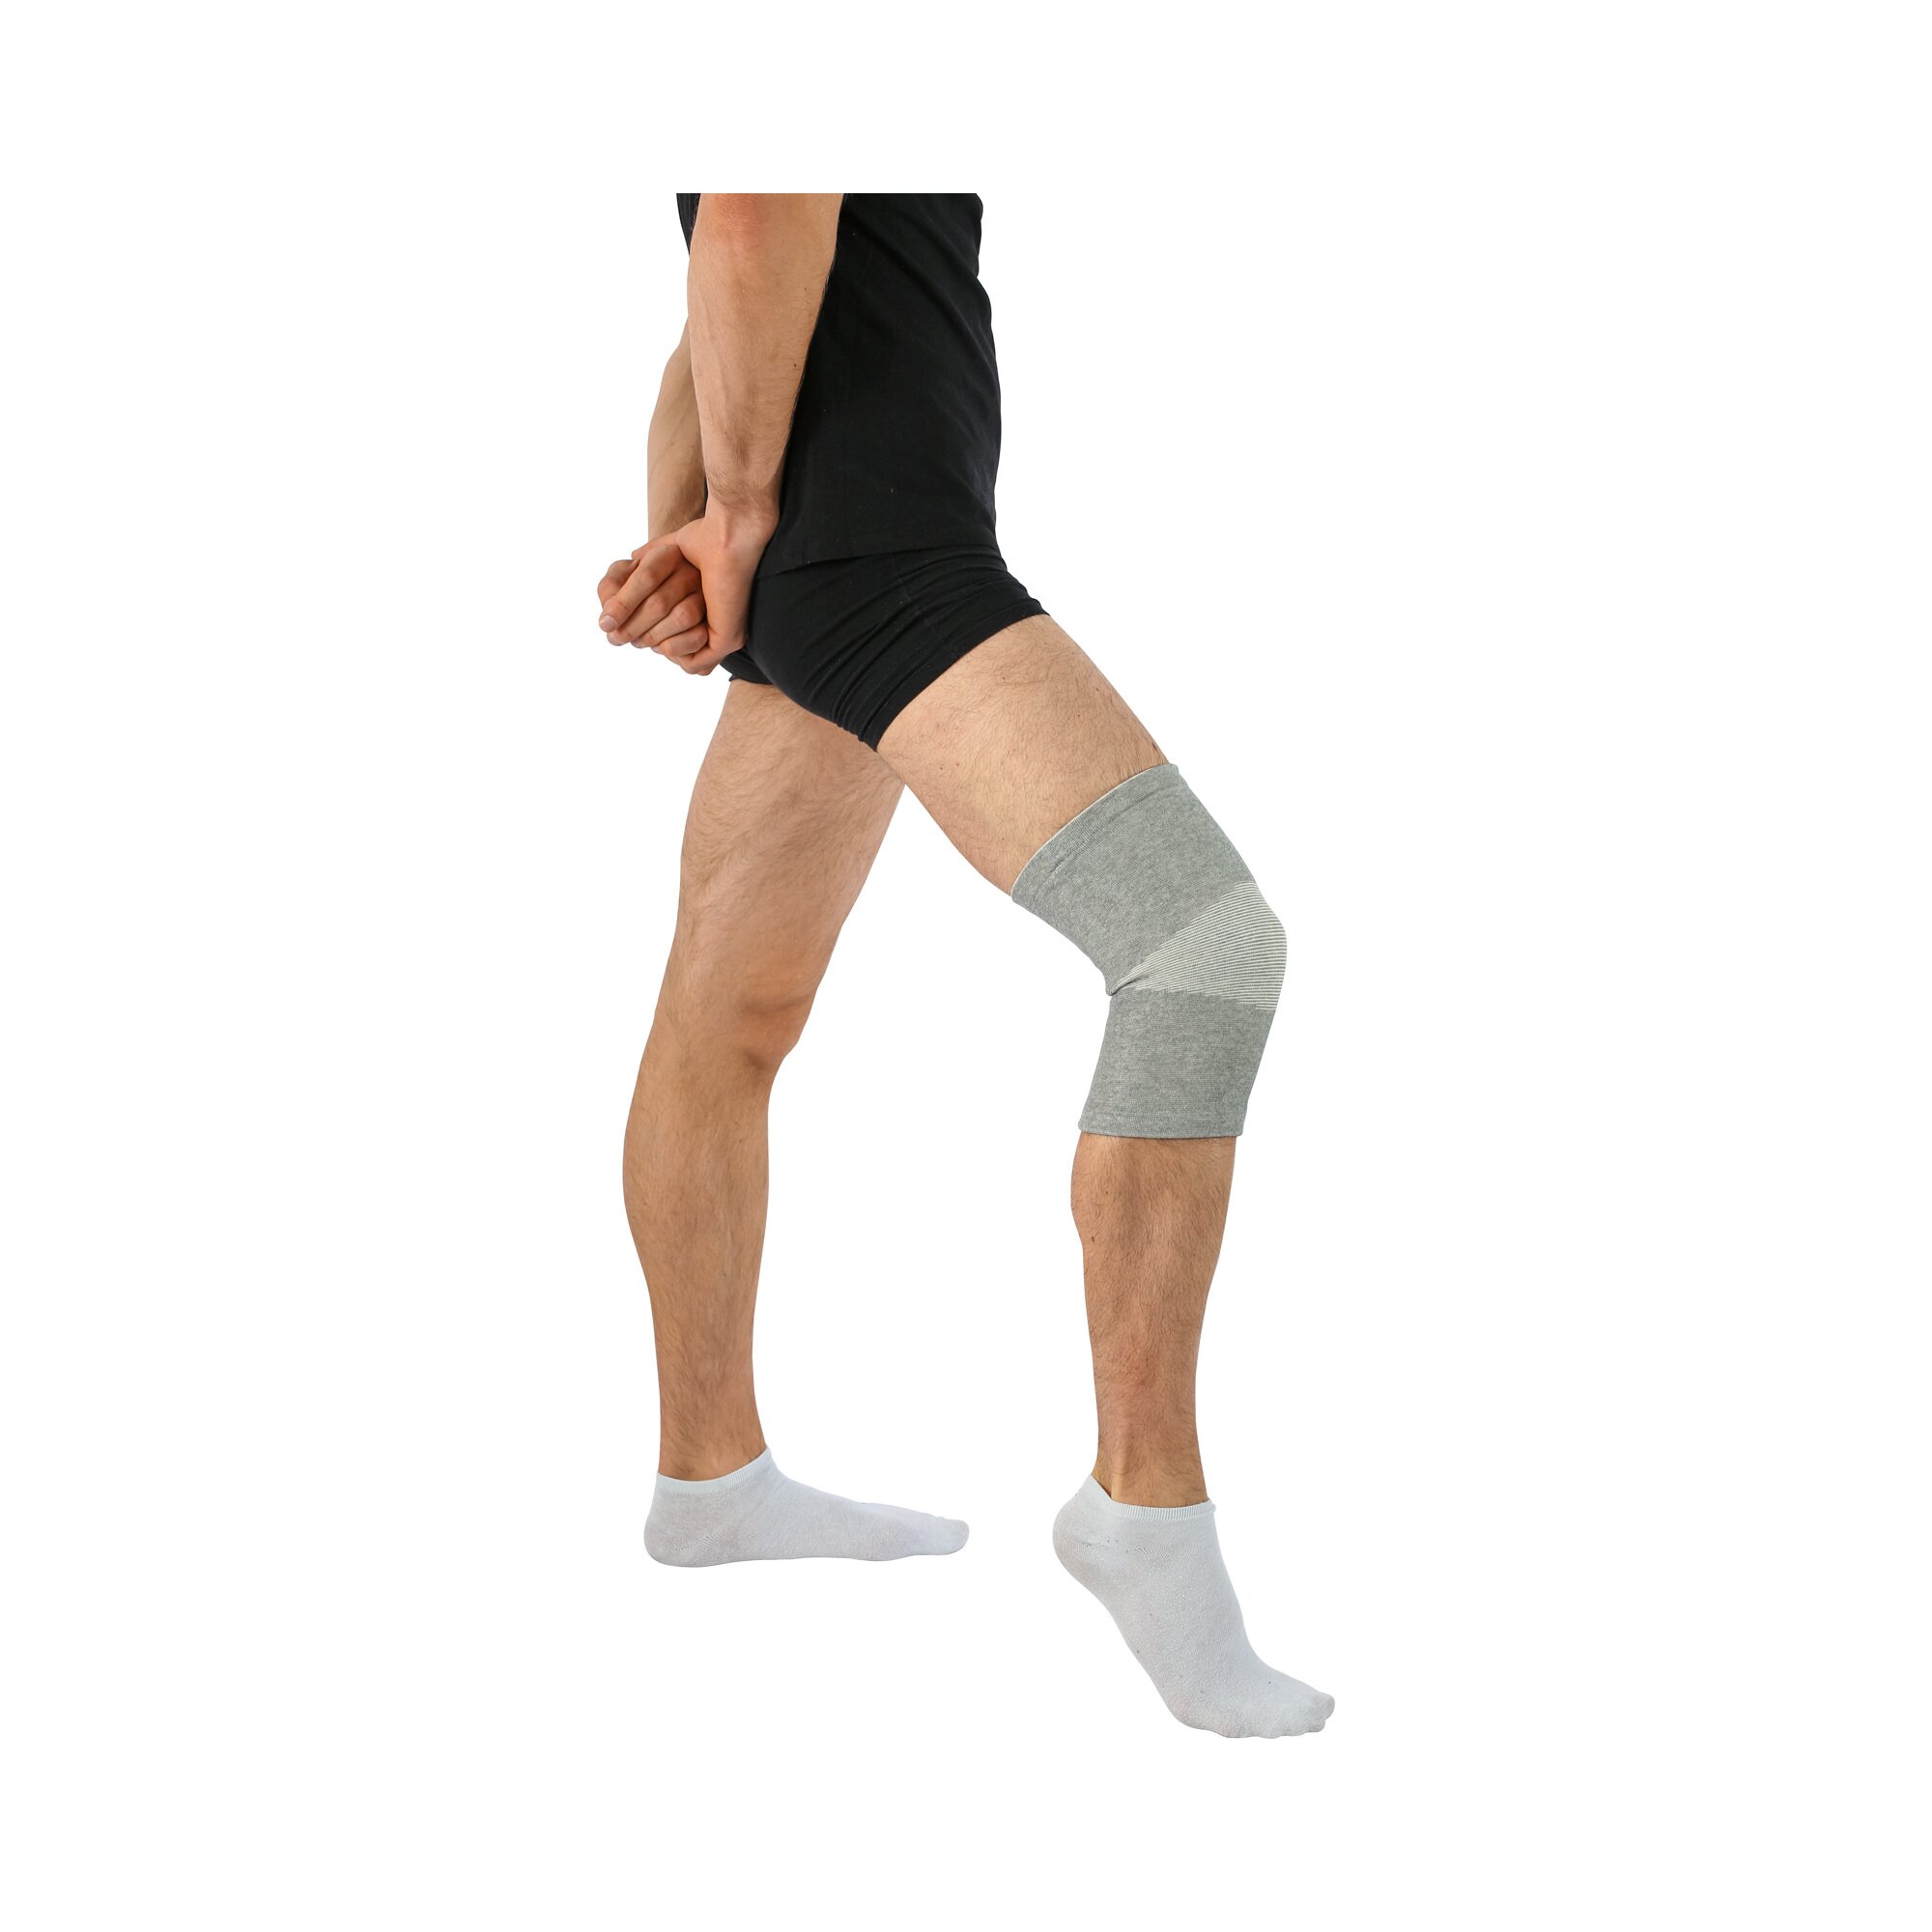 Knie-Bandage mit Bambusfasern, Größe: L